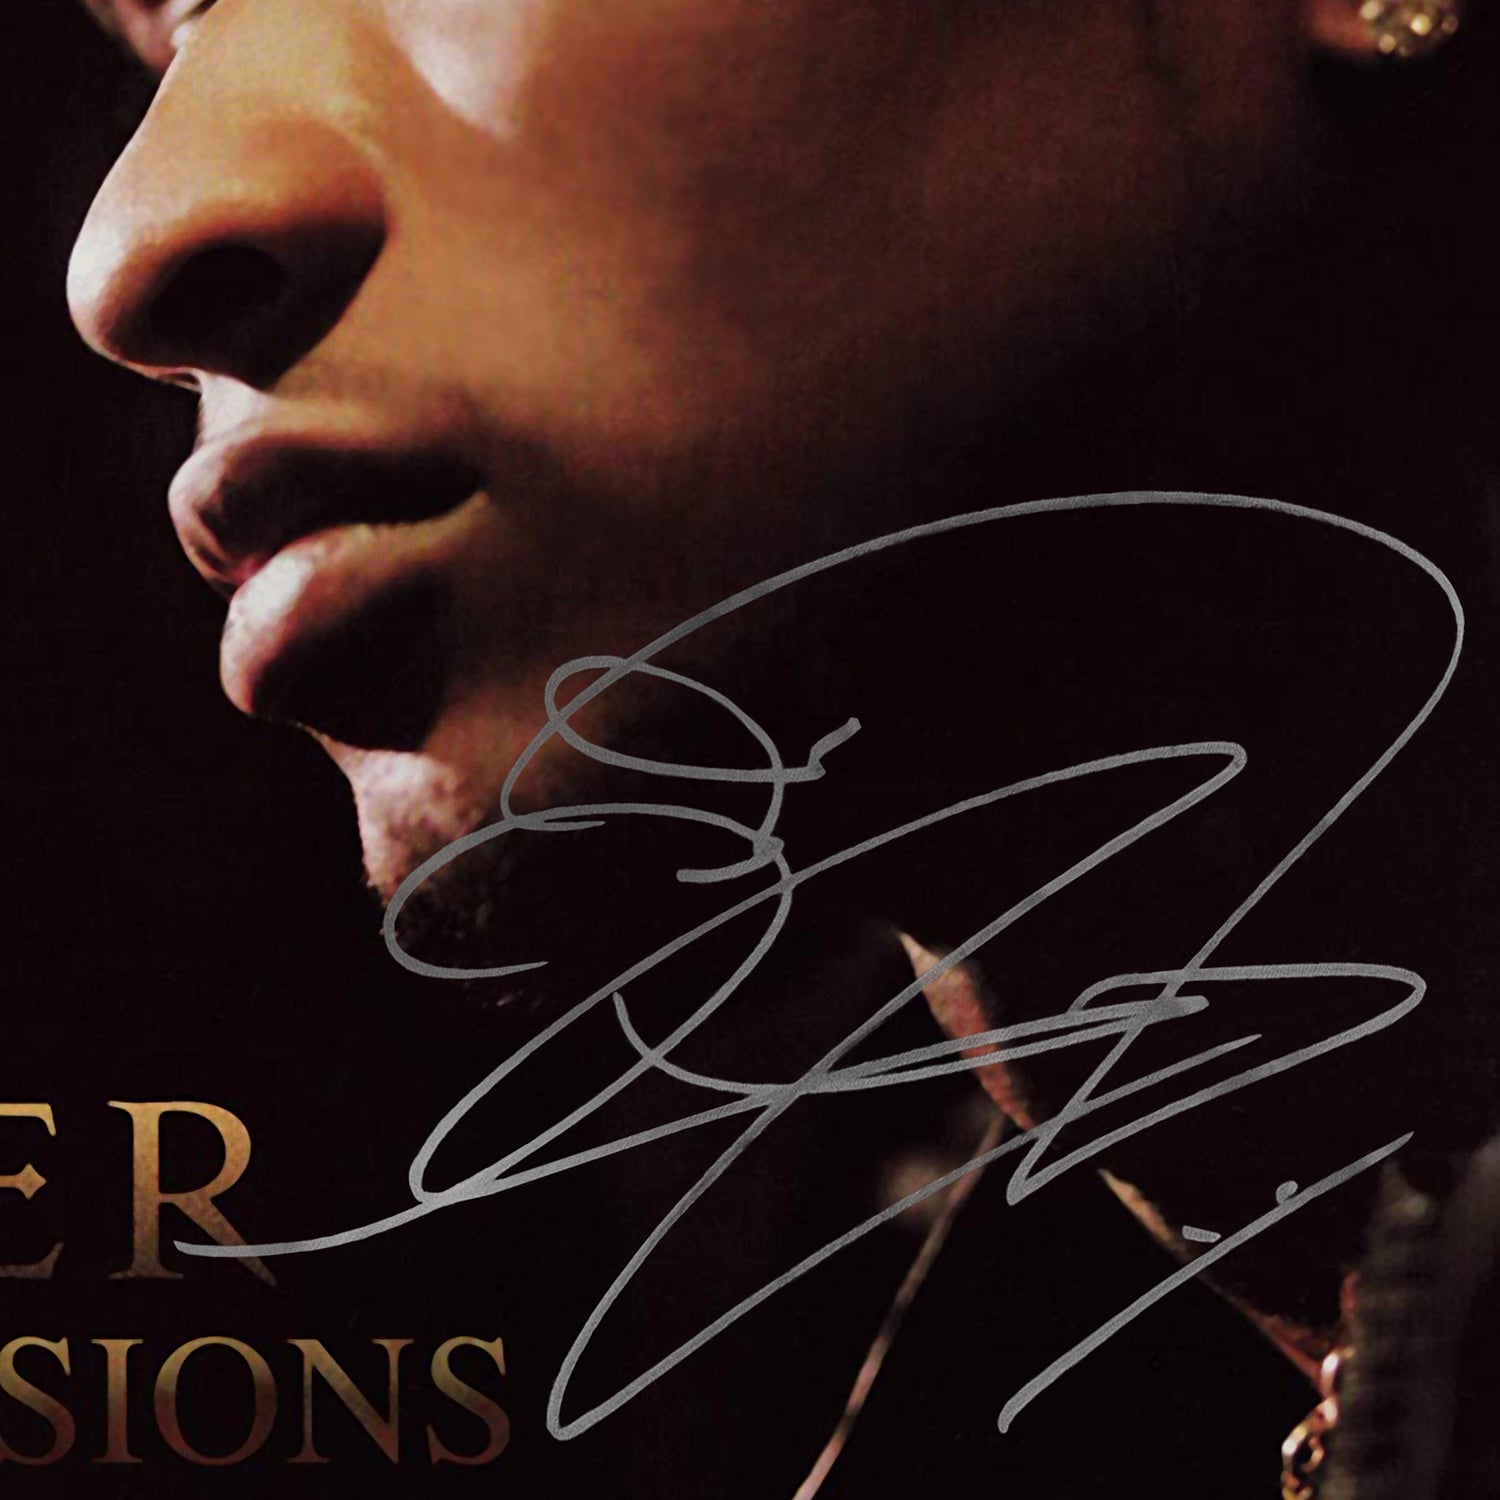 usher confessions album artwork